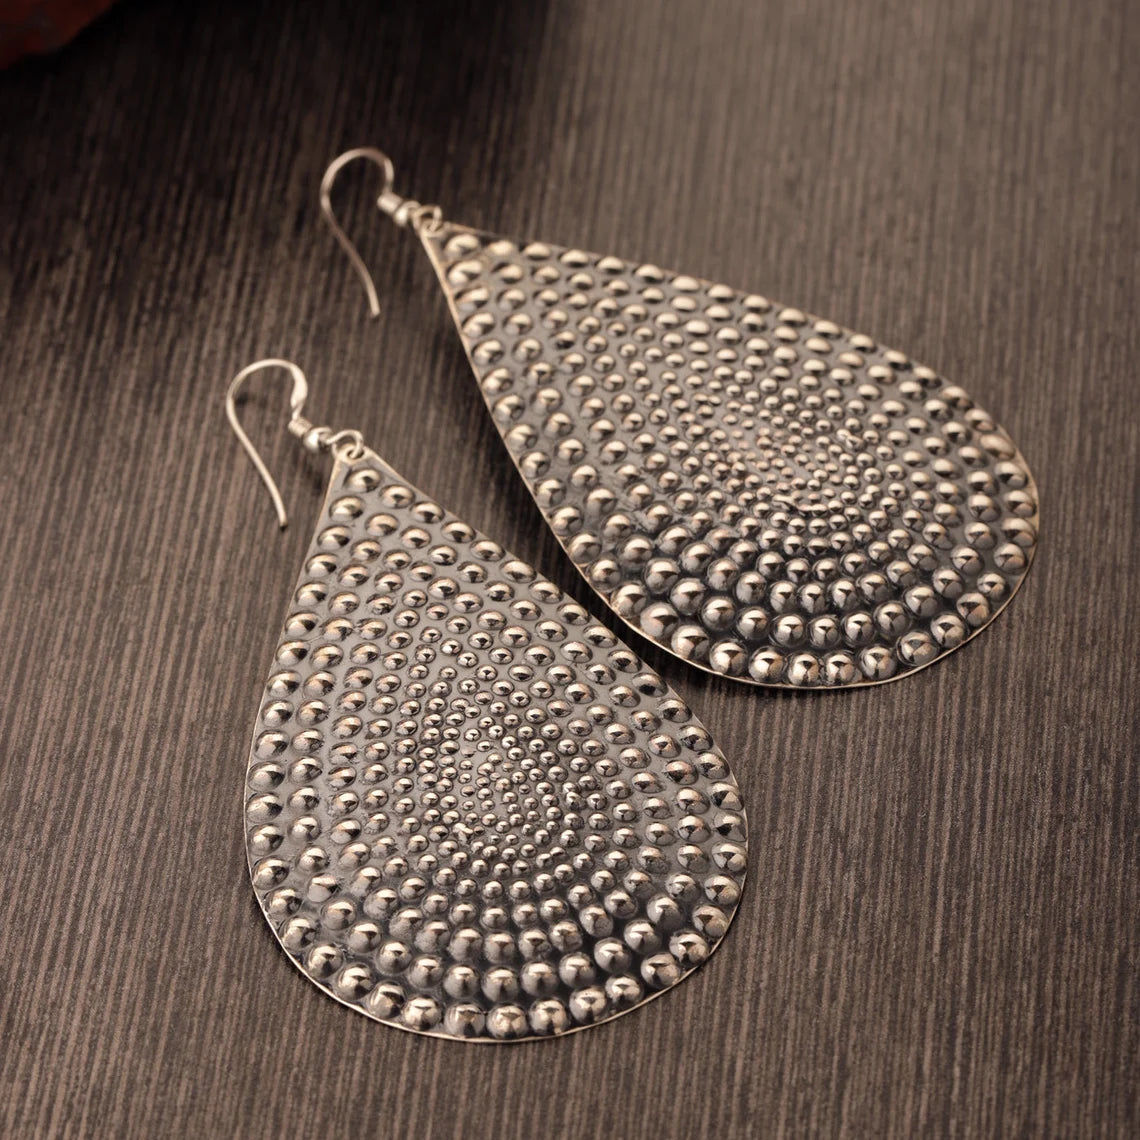 Sterling Silver Earrings - Dotted Earrings - Huge Earrings - Large Drops - Oxidized Earrings - Silver Earrings Pear Shape Dangle Earrings